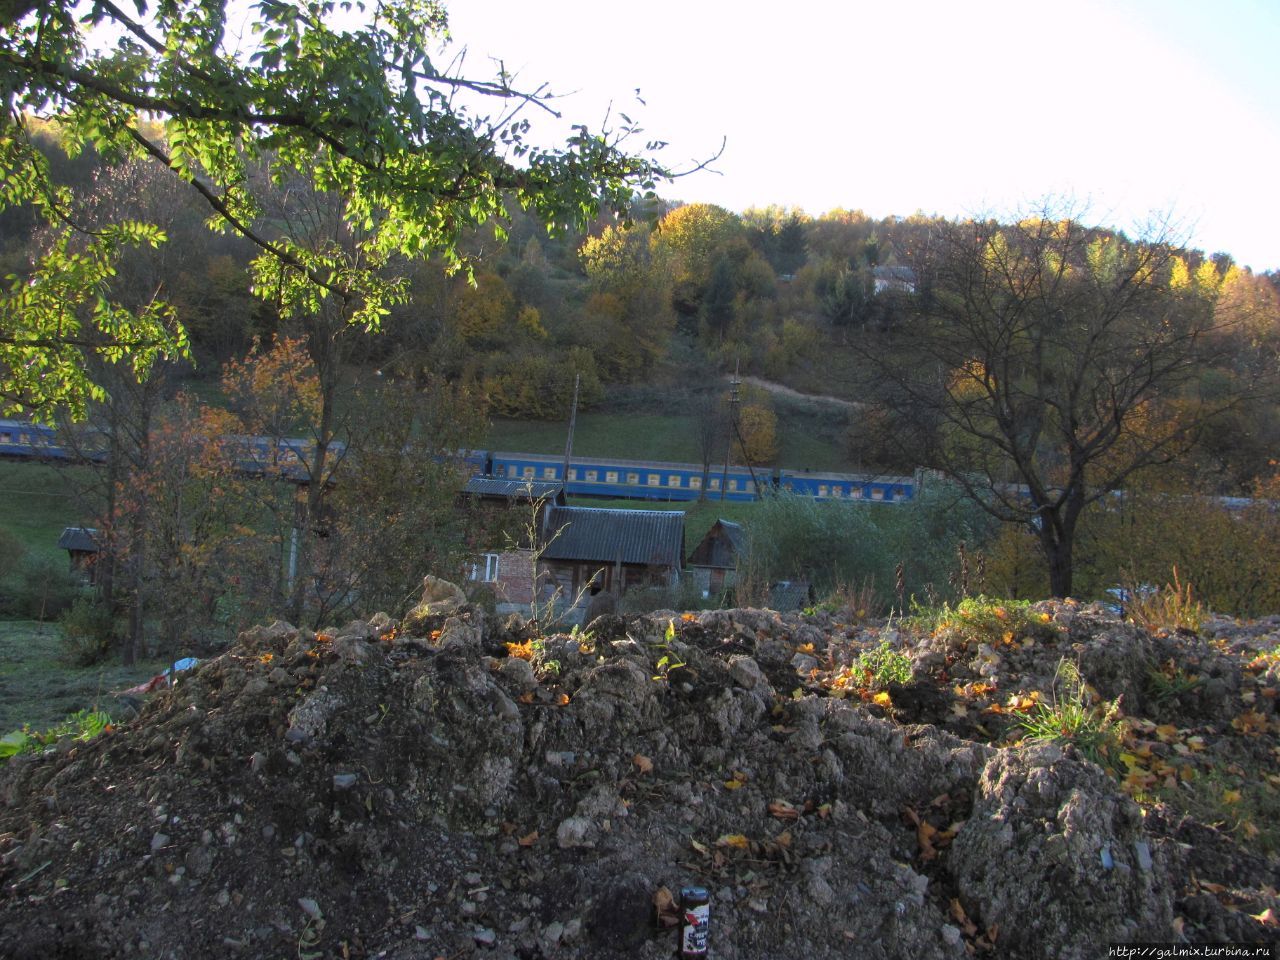 Очаровательная осень в Квасах и фальшивая цивилизация. Квасы, Украина